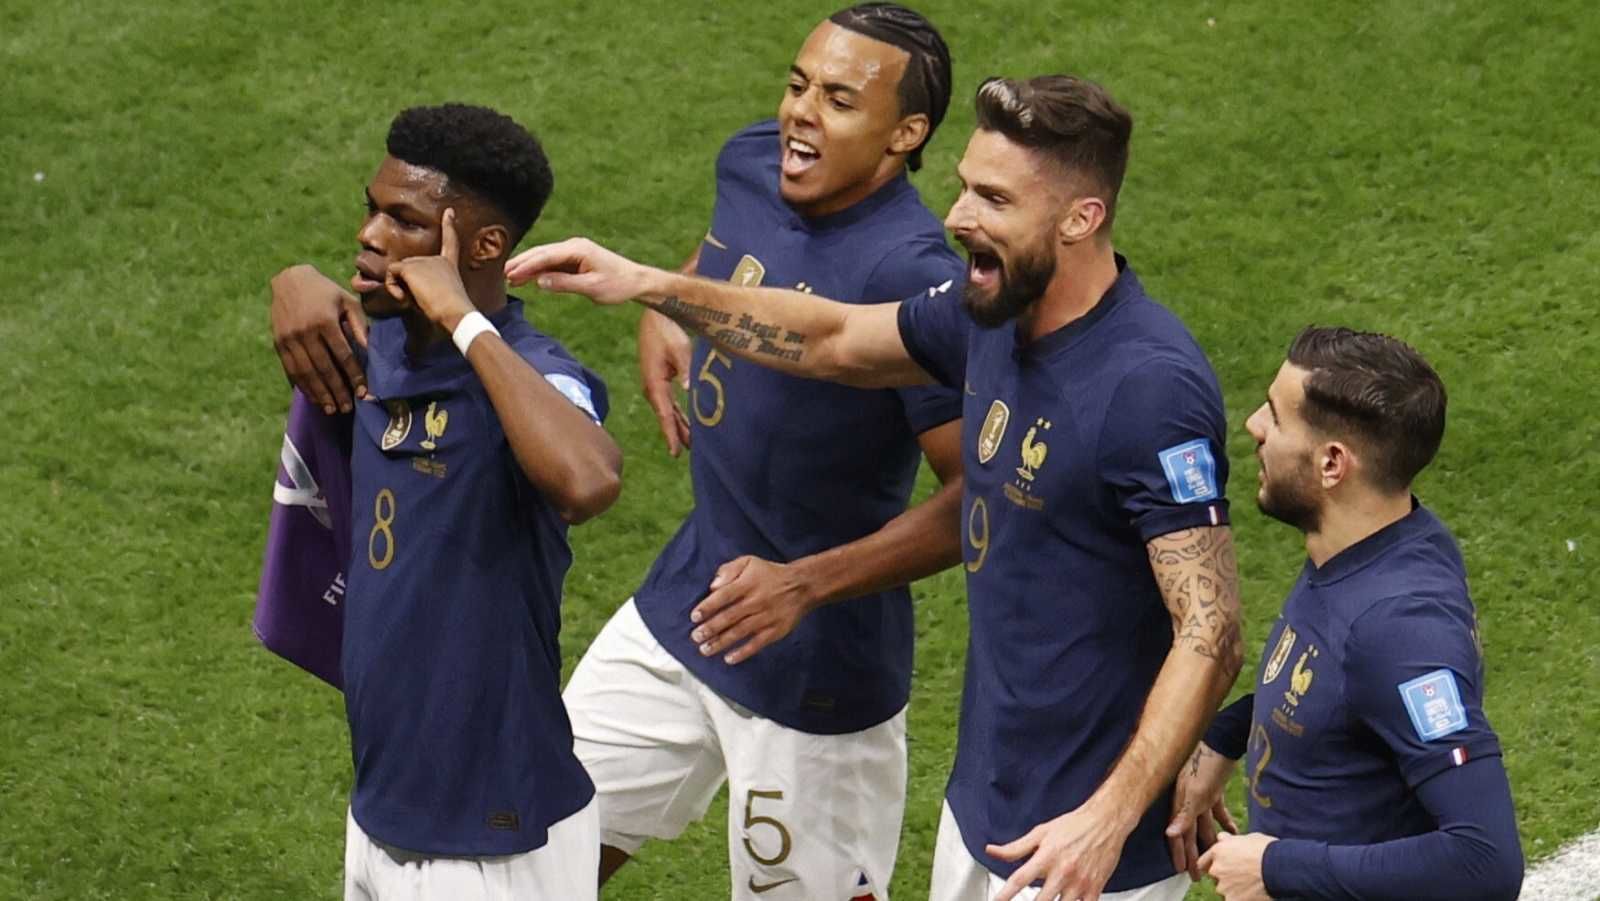 La selección de Francia derrotó a Inglaterra 2:1 y avanzó a las semifinales de la Copa del Mundo Qatar 2022